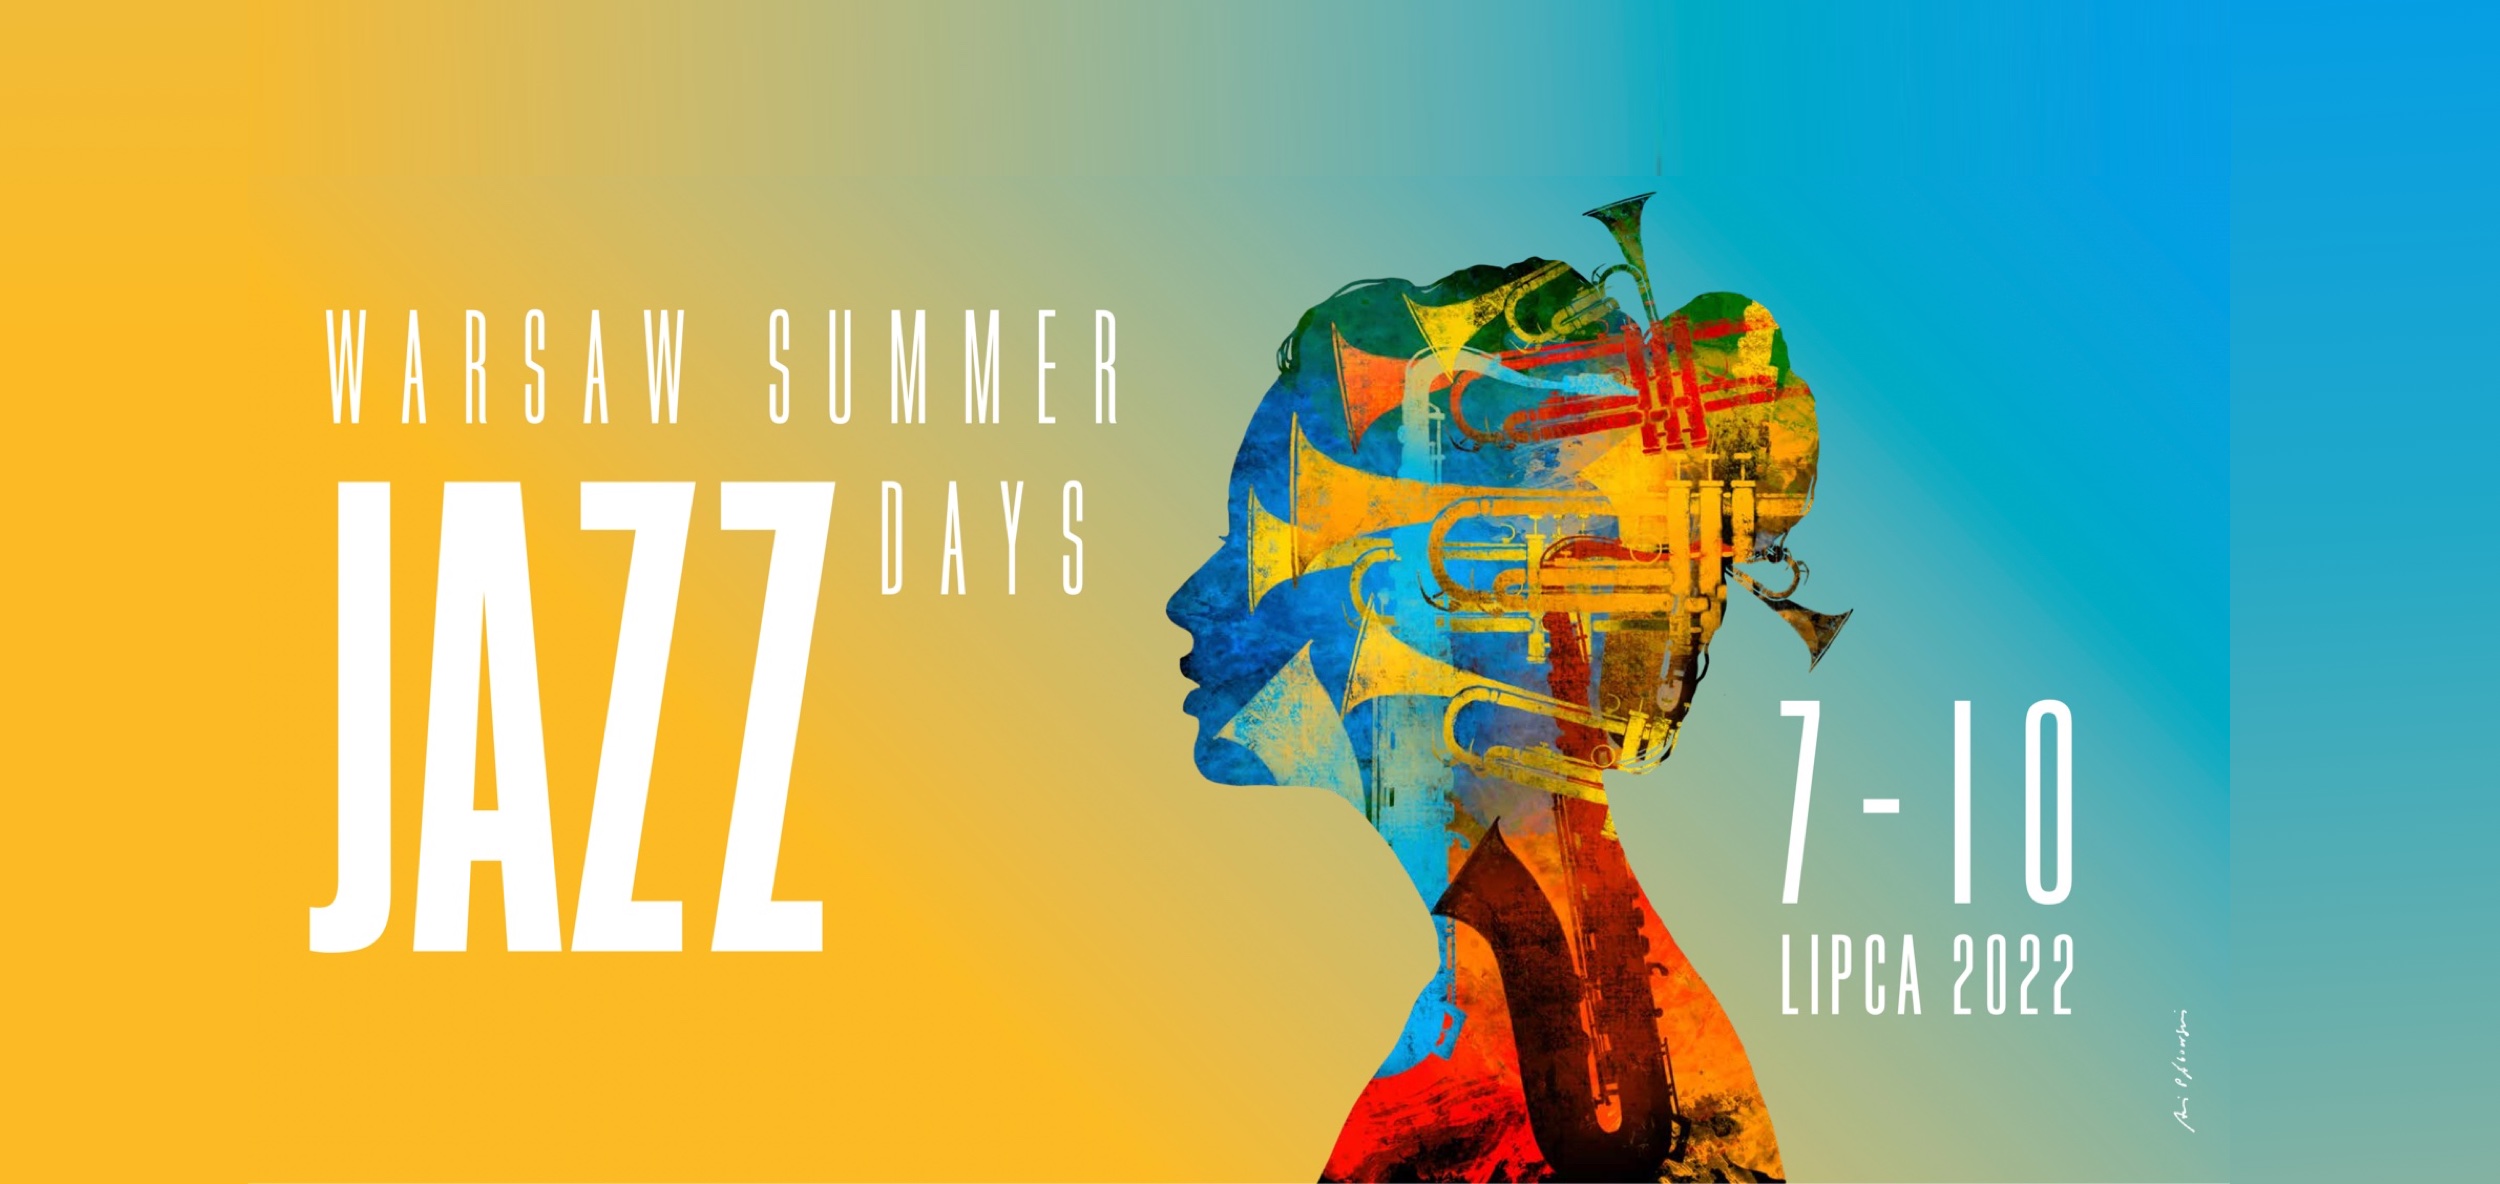 Warsaw Summer Jazz Days 2022